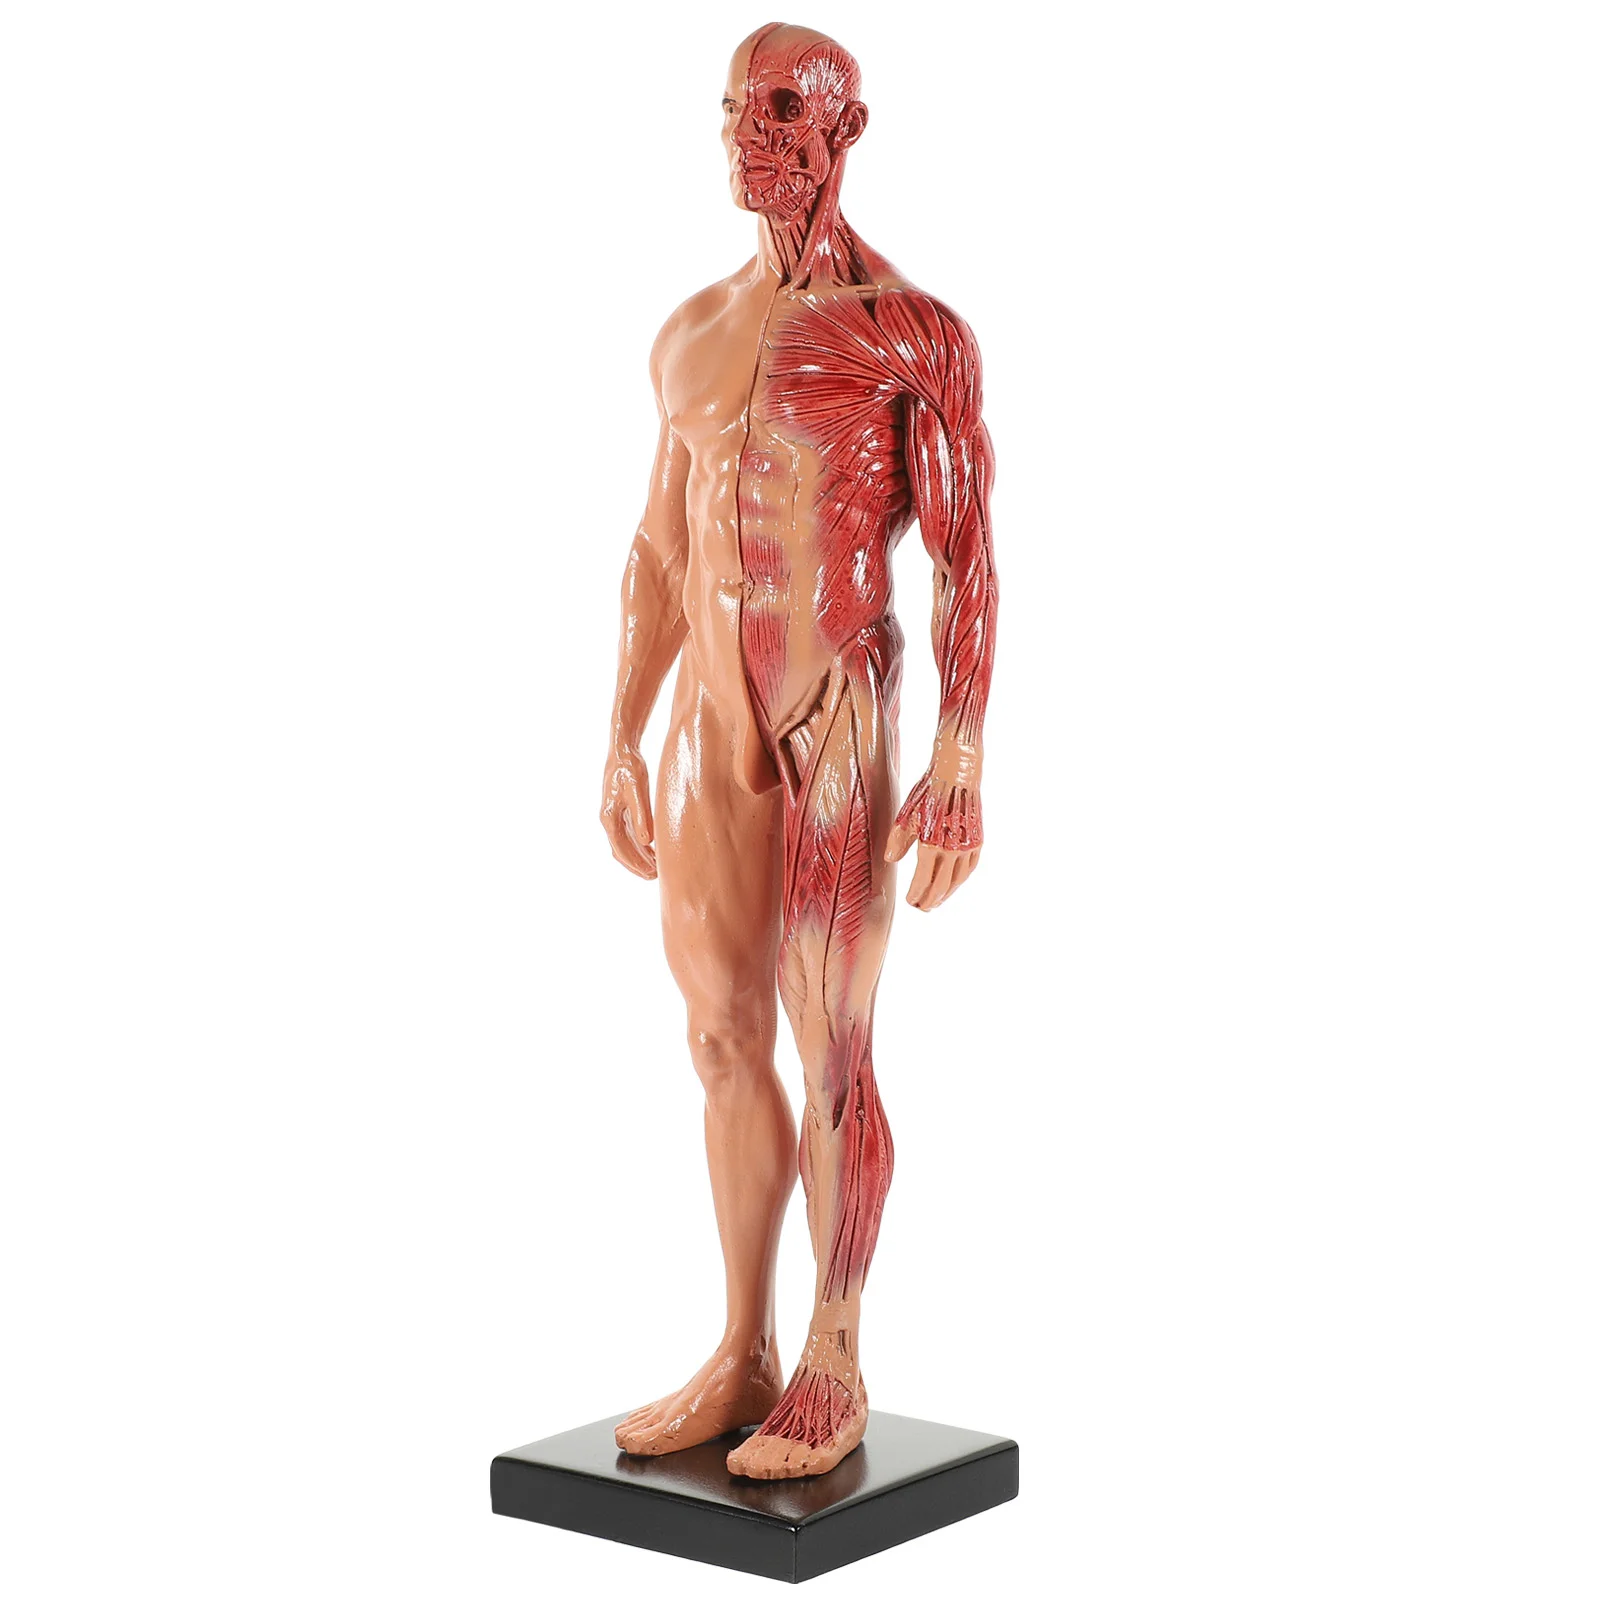 

Манекен манакин, модель мышц, миниатюрная скульптура, инструмент для обучения анатомии, фигурка тела из смолы, картина CG, человеческие модели